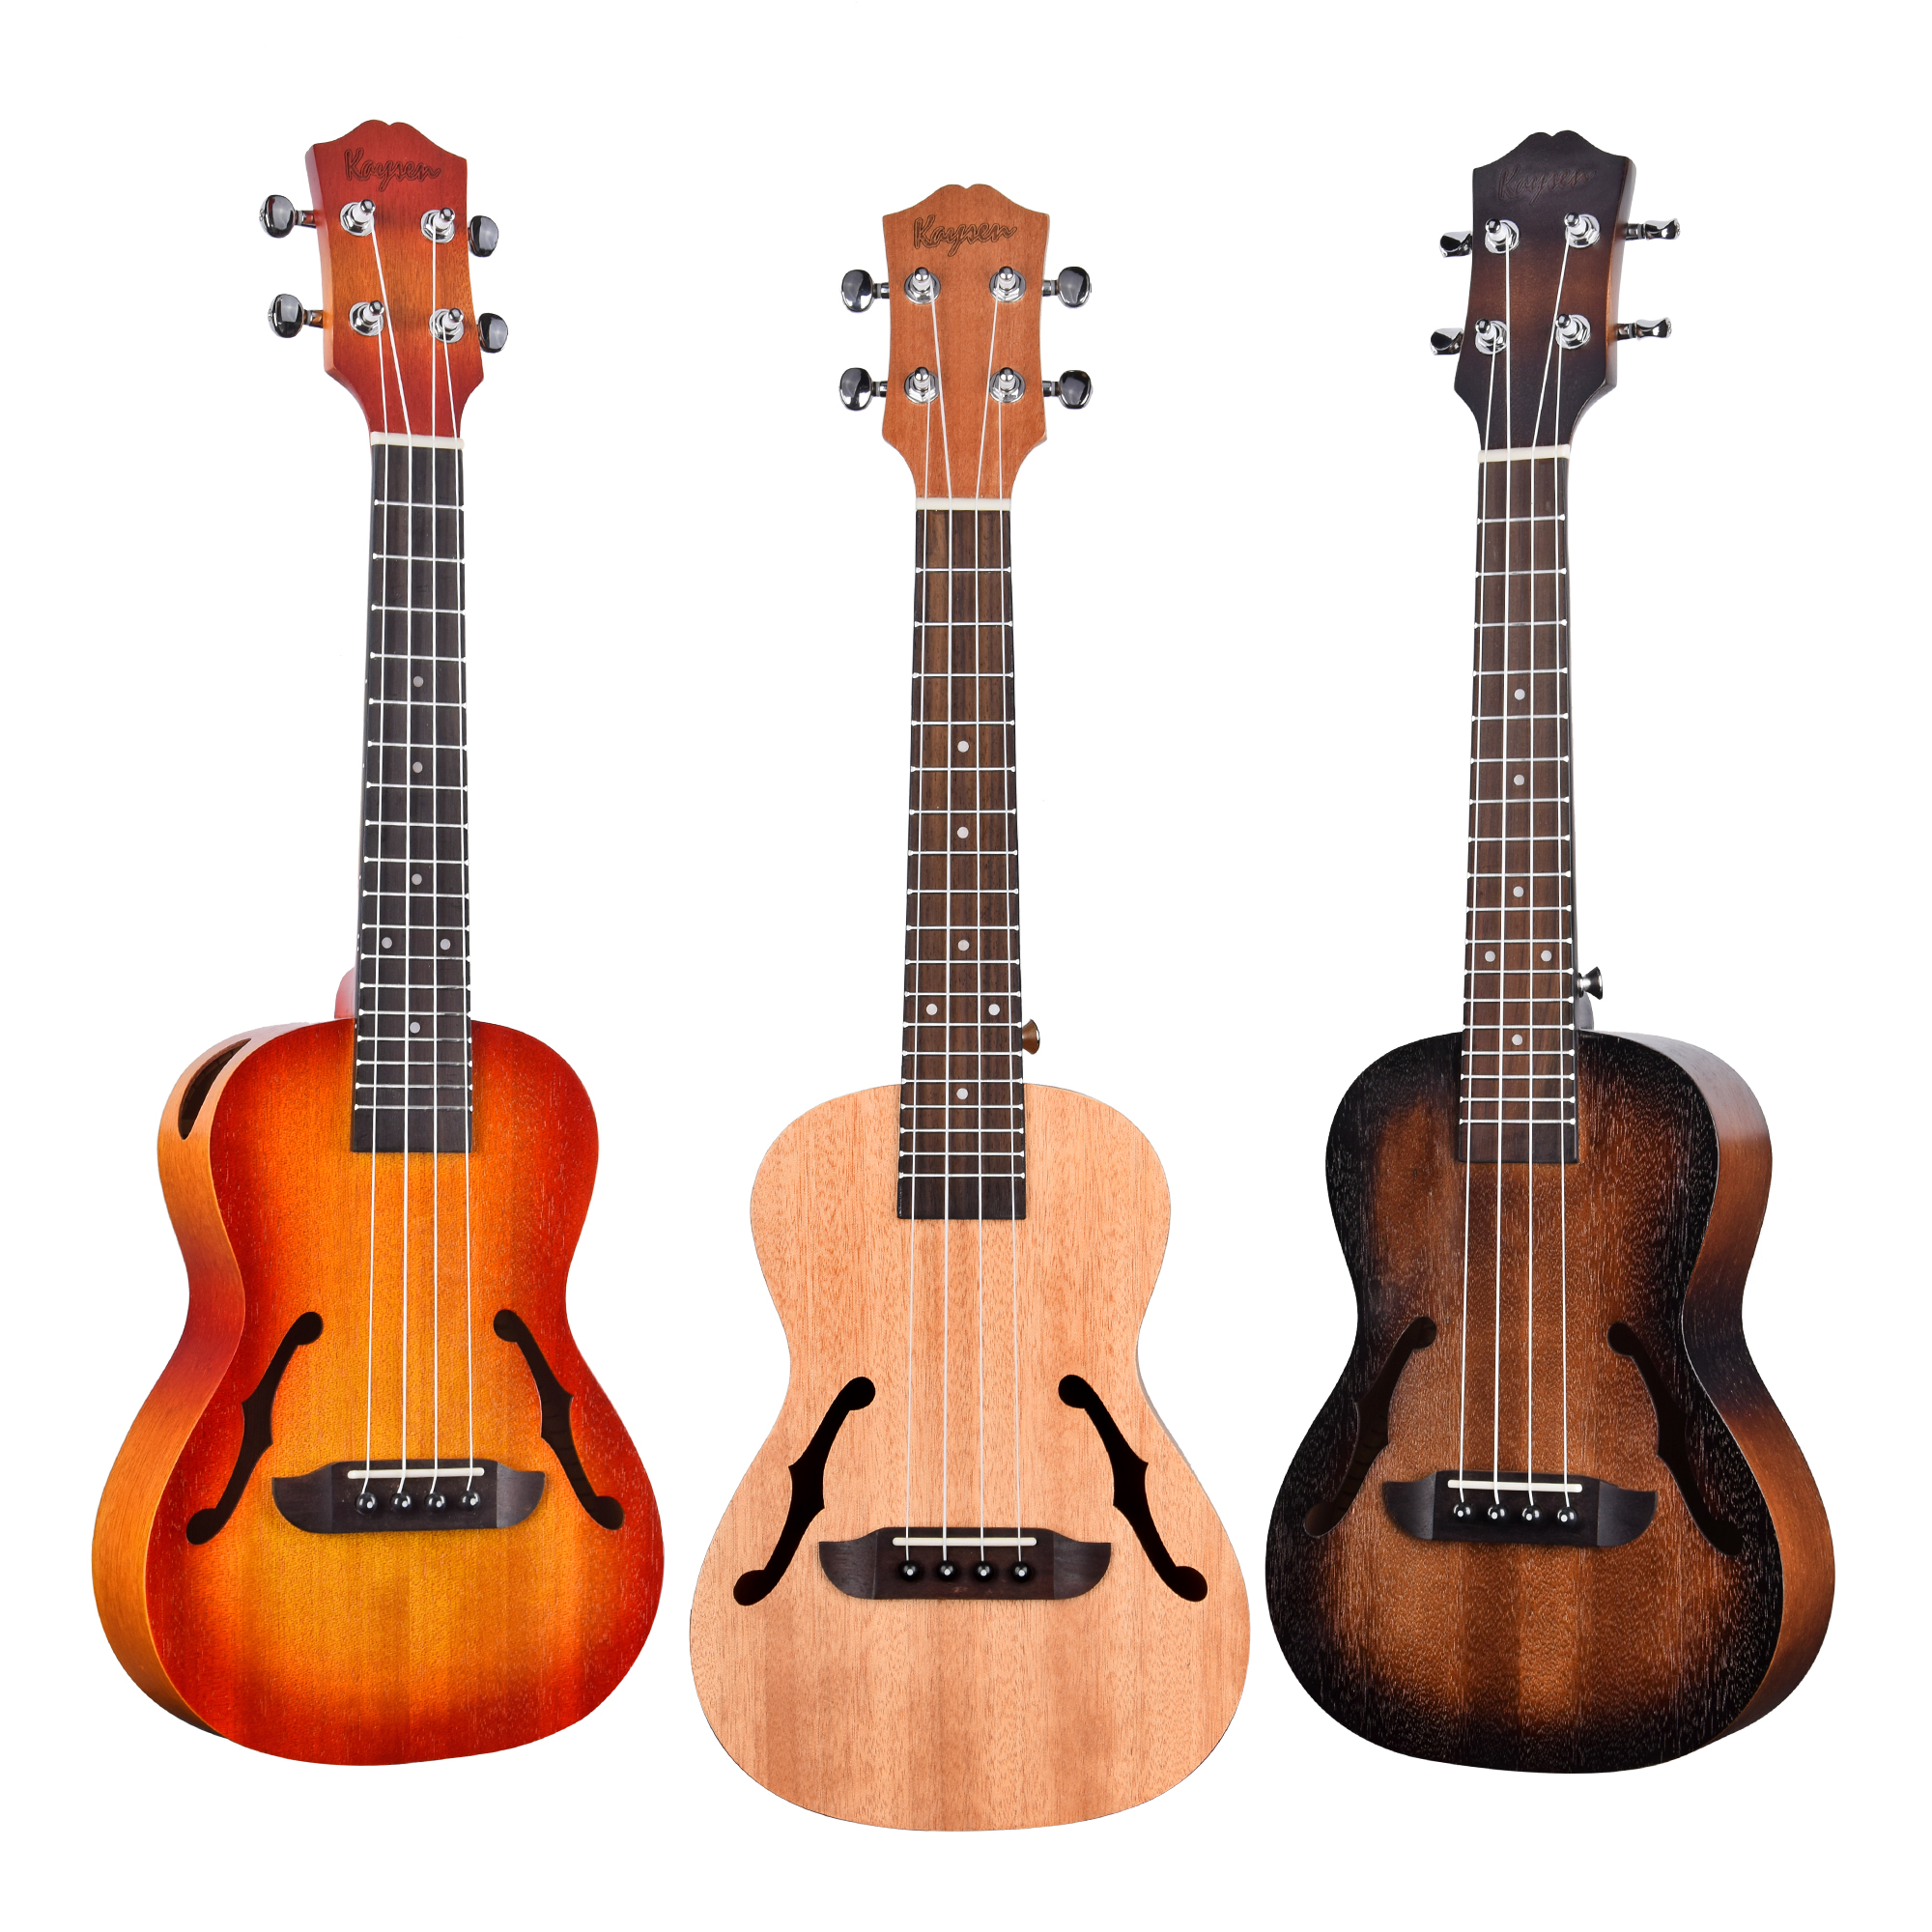 UK-U2 custom shows ukulele sound test